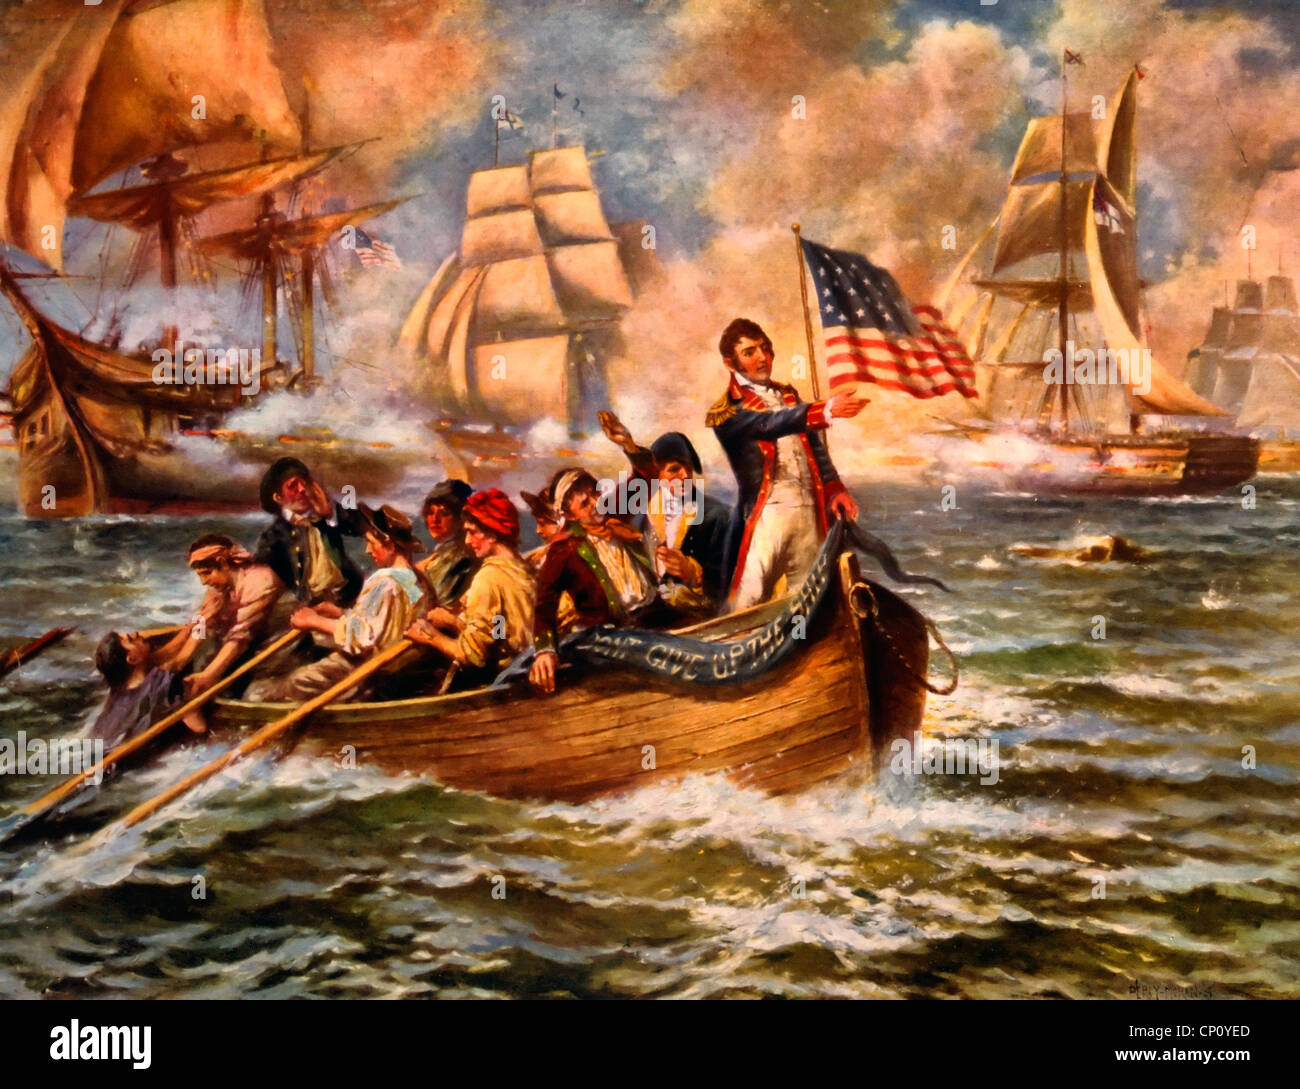 La batalla del Lago Erie - Oliver peligro permanente de Perry en la parte delantera del barco pequeño después de abandonar a su buque insignia, el Lawrence, 1813 Foto de stock